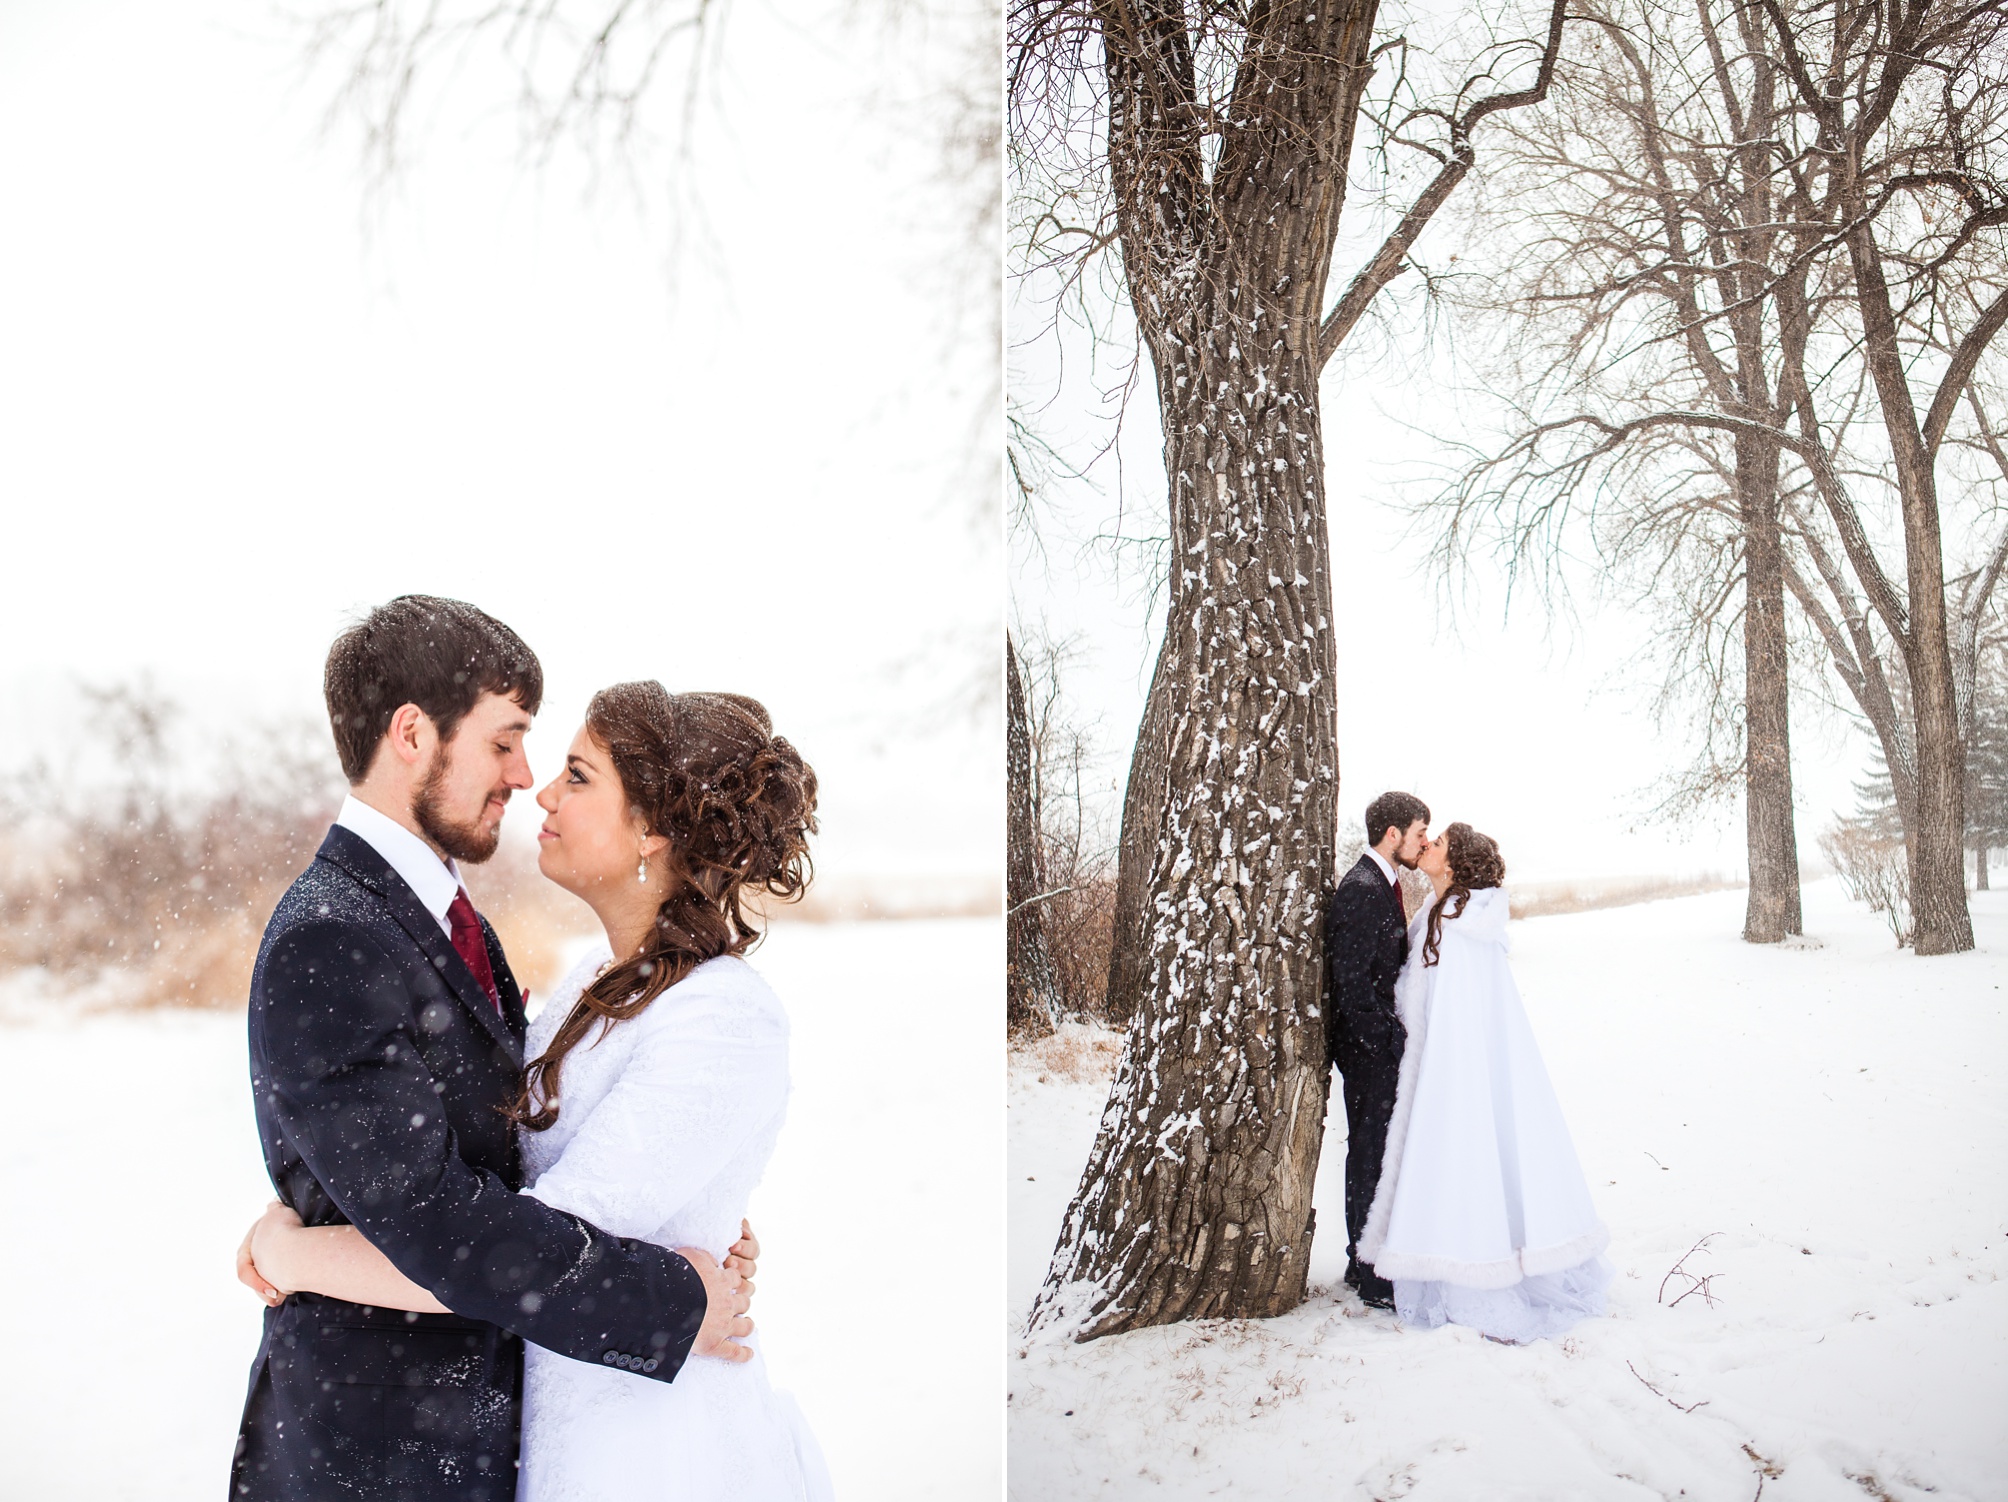 Alex and Kim's snowy winter wedding